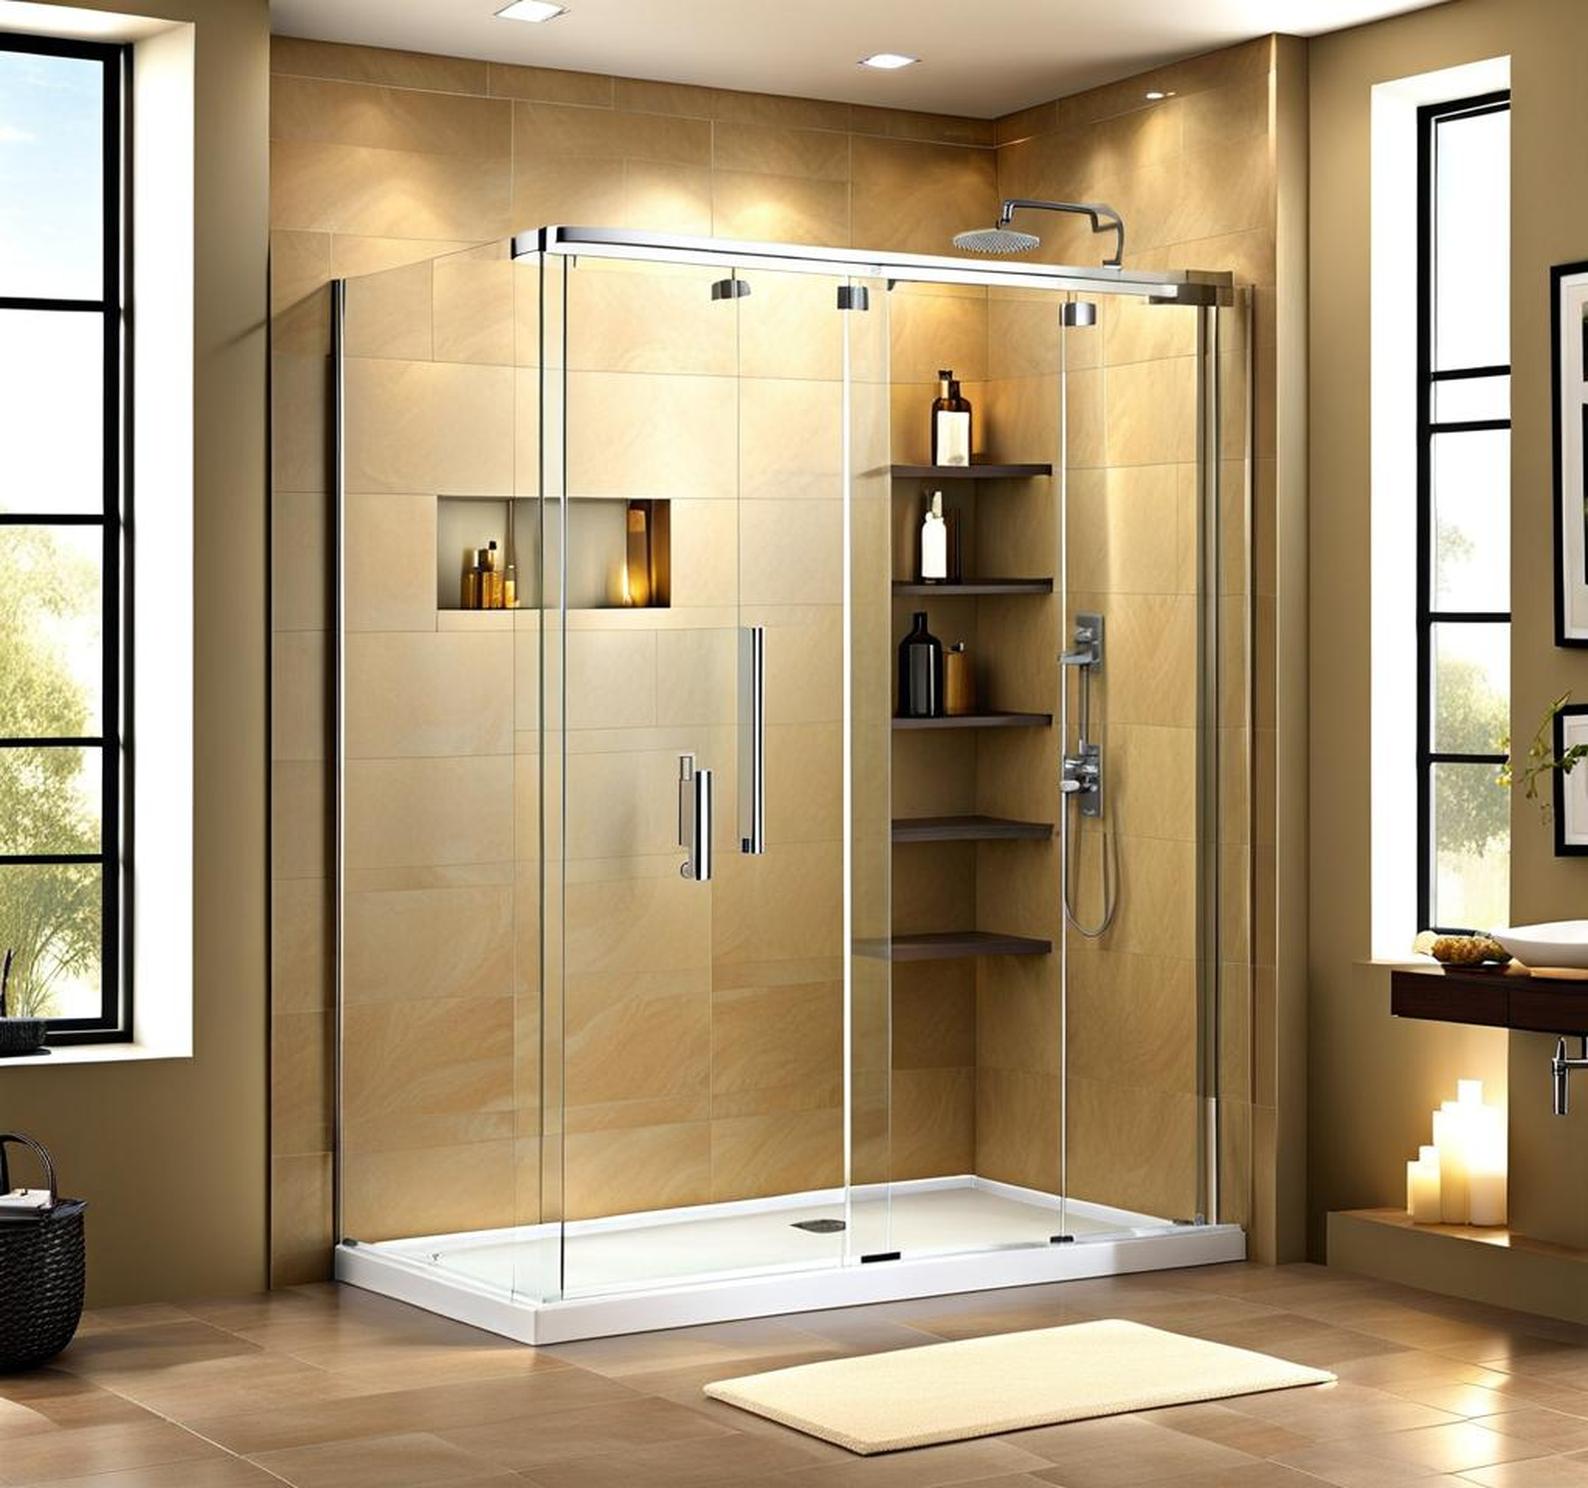 doorless walk-in shower dimensions